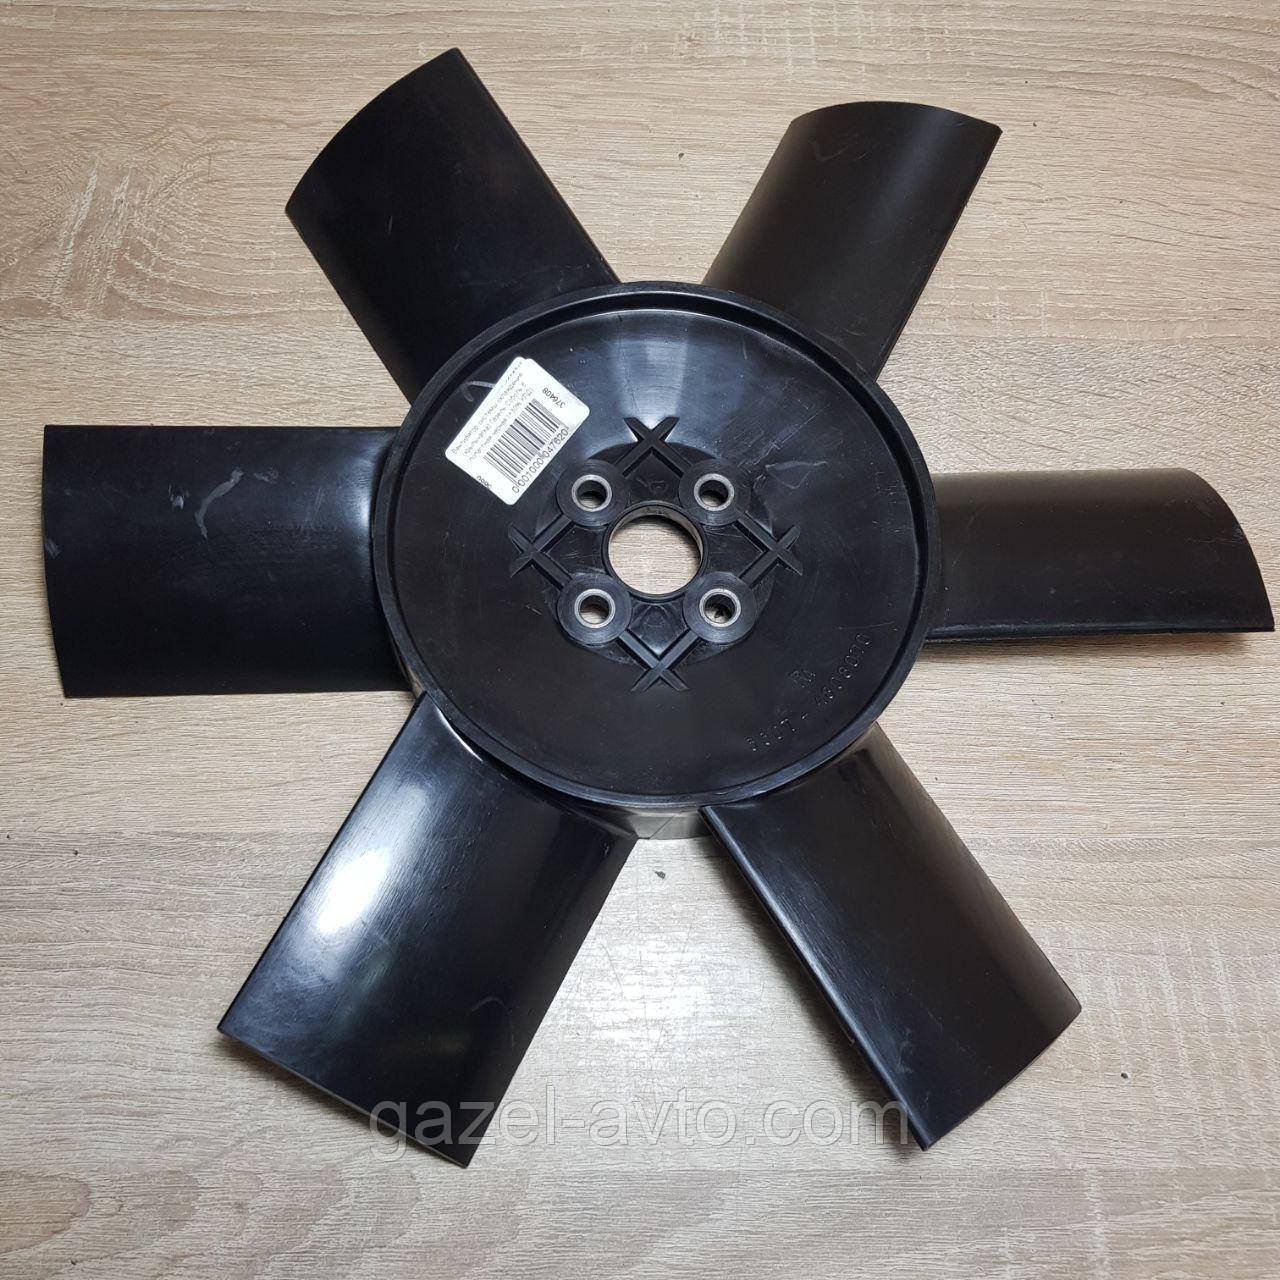 Вентилятор системы охлаждения (крыльчатка) Газель,Соболь 6 лопастная черная (+30% КПД)